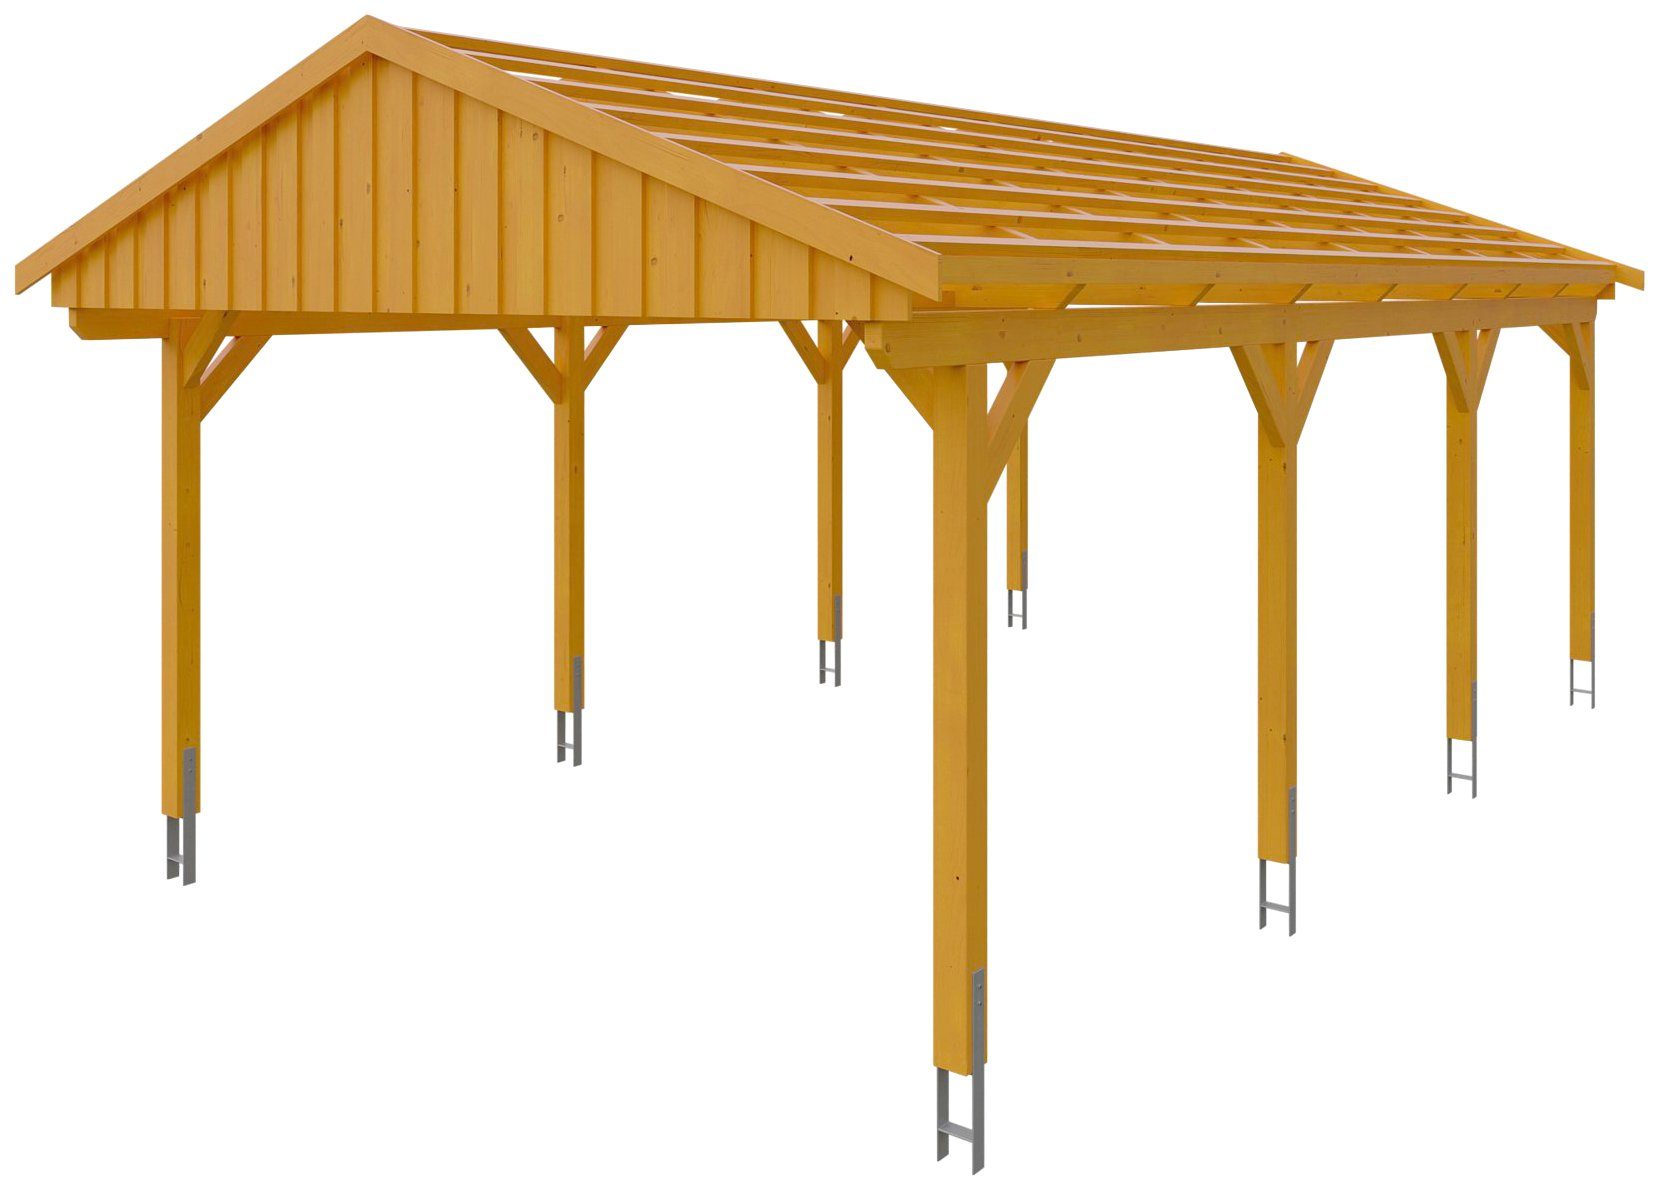 Skanholz Einzelcarport Fichtelberg, BxT: 423x808 cm, 379 cm Einfahrtshöhe,  mit Dachlattung, Massive Konstruktion aus hochwertigem Leimholz (BSH-Fichte) | Carports